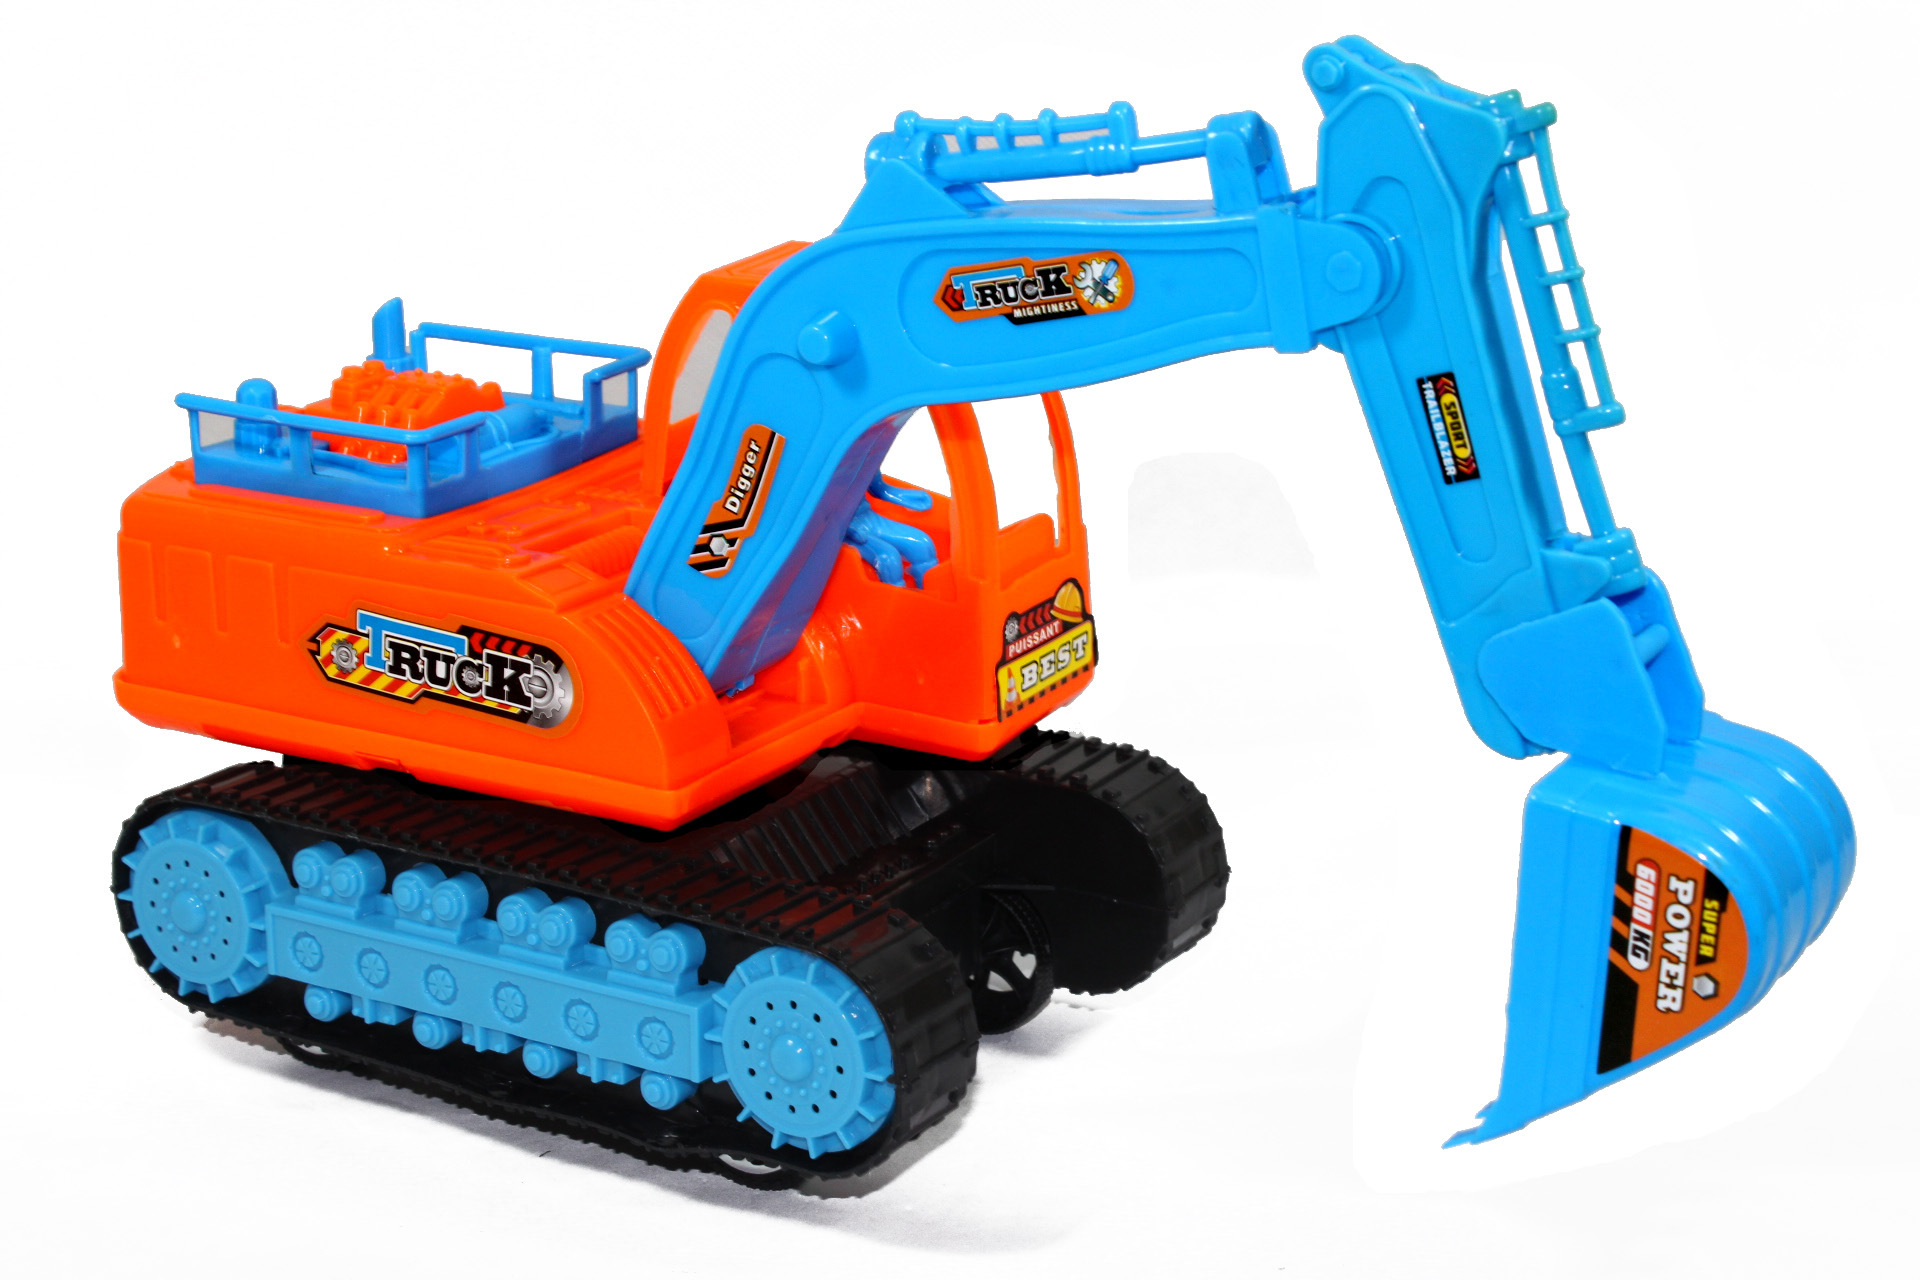 儿童玩具挖掘机可坐可骑宝宝大号挖机音乐工程男孩电动挖土机-阿里巴巴